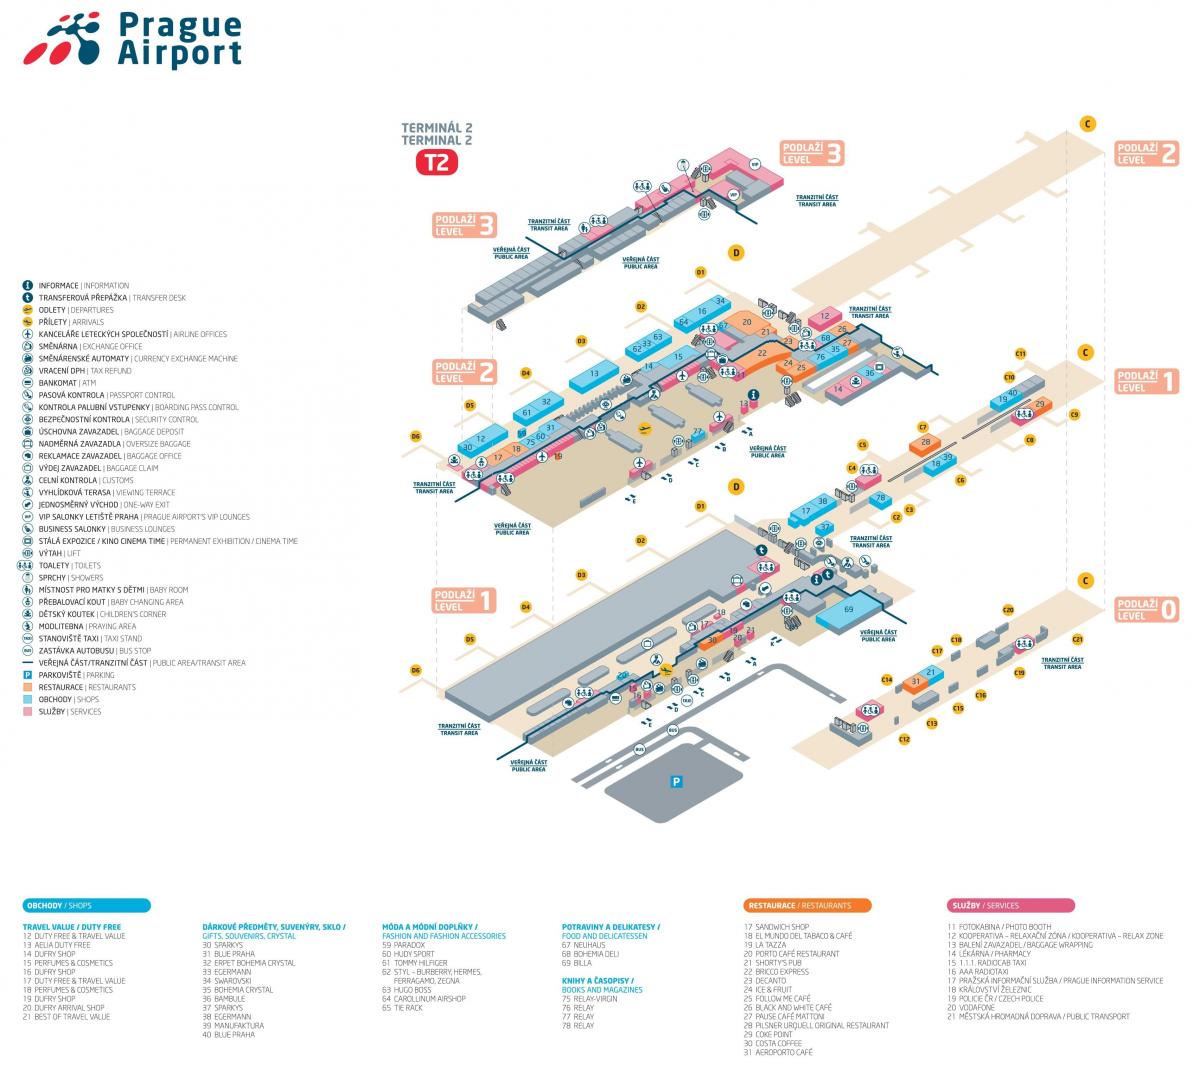 map of prague airport terminal 2